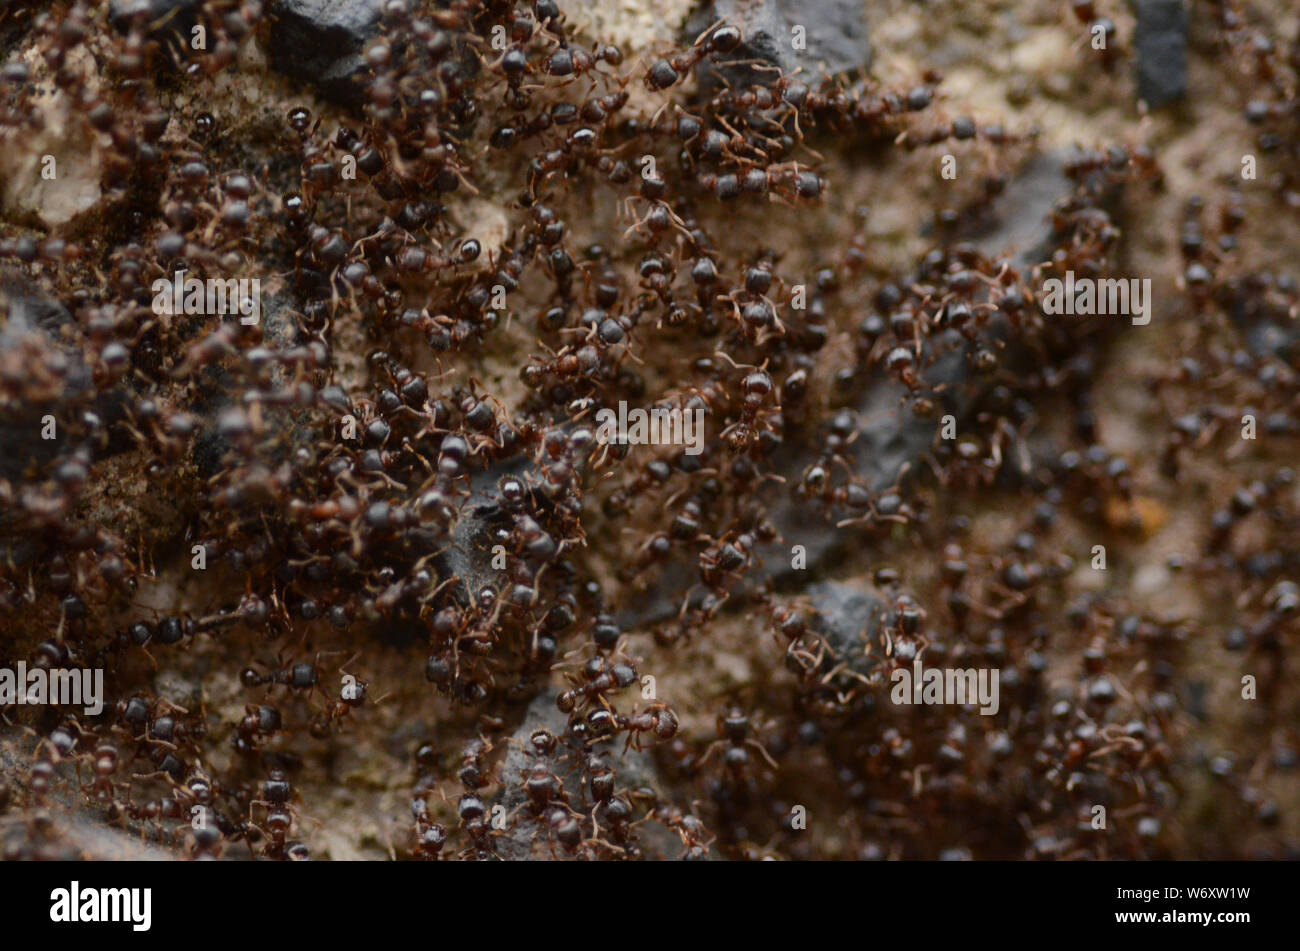 Schlacht: Auf einer kurbigen Straße findet ein epischer Krieg zwischen zwei Ameisenkolonien statt. Stockfoto